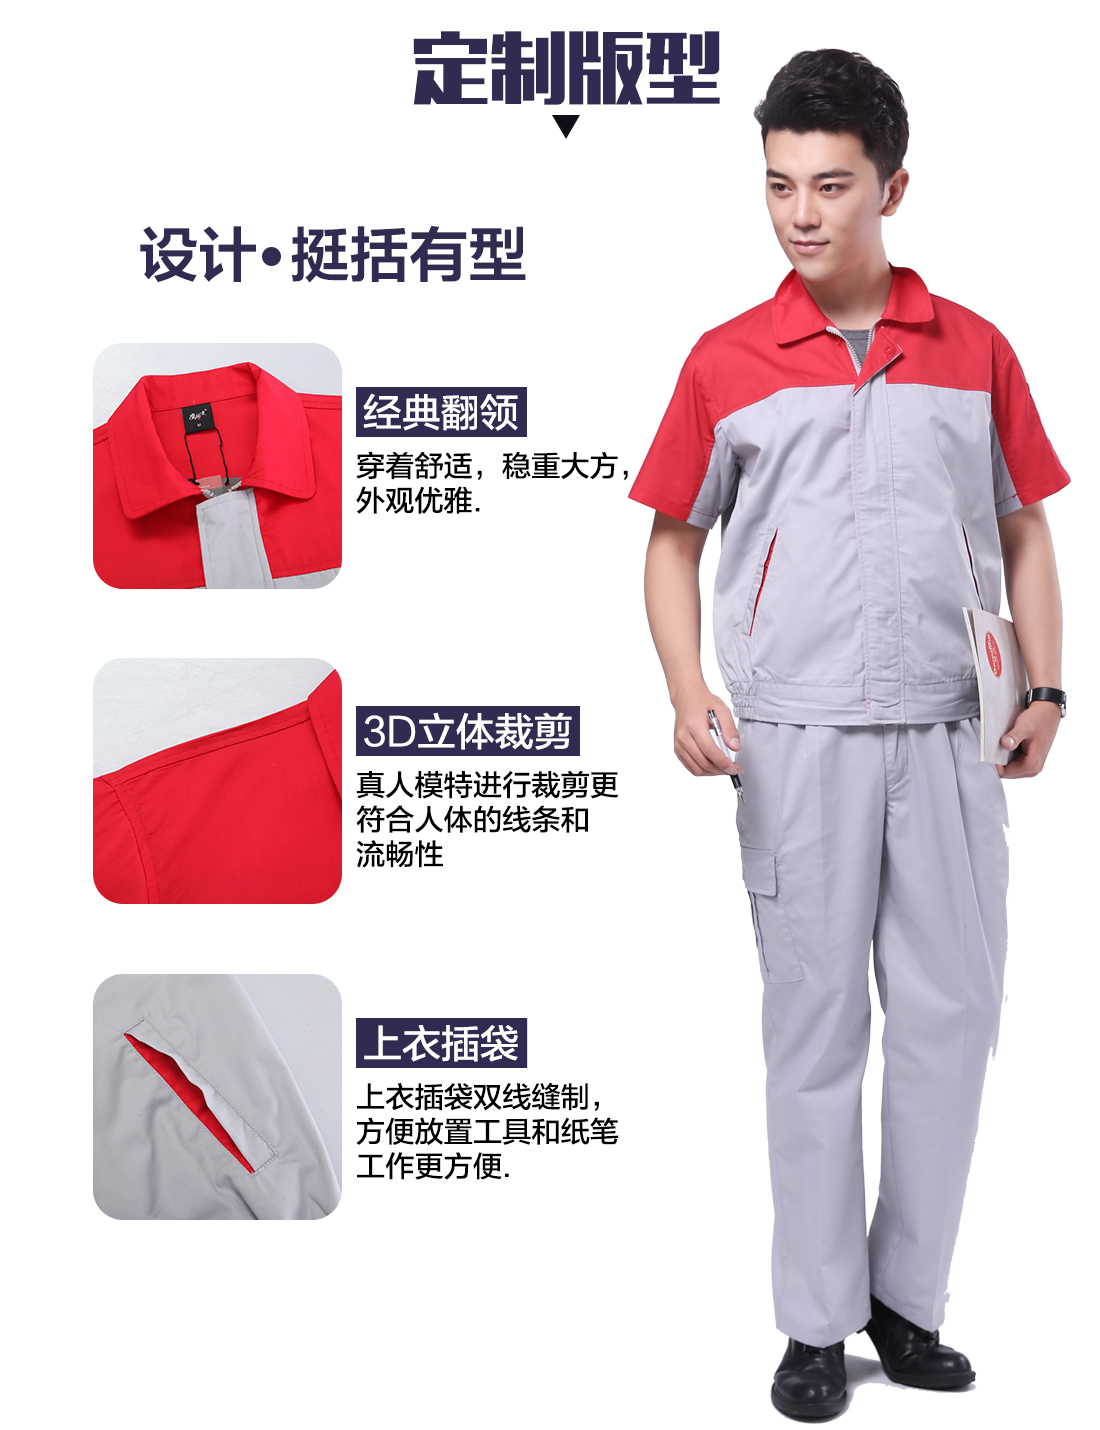 短袖劳保工作服的3D立体版型设计